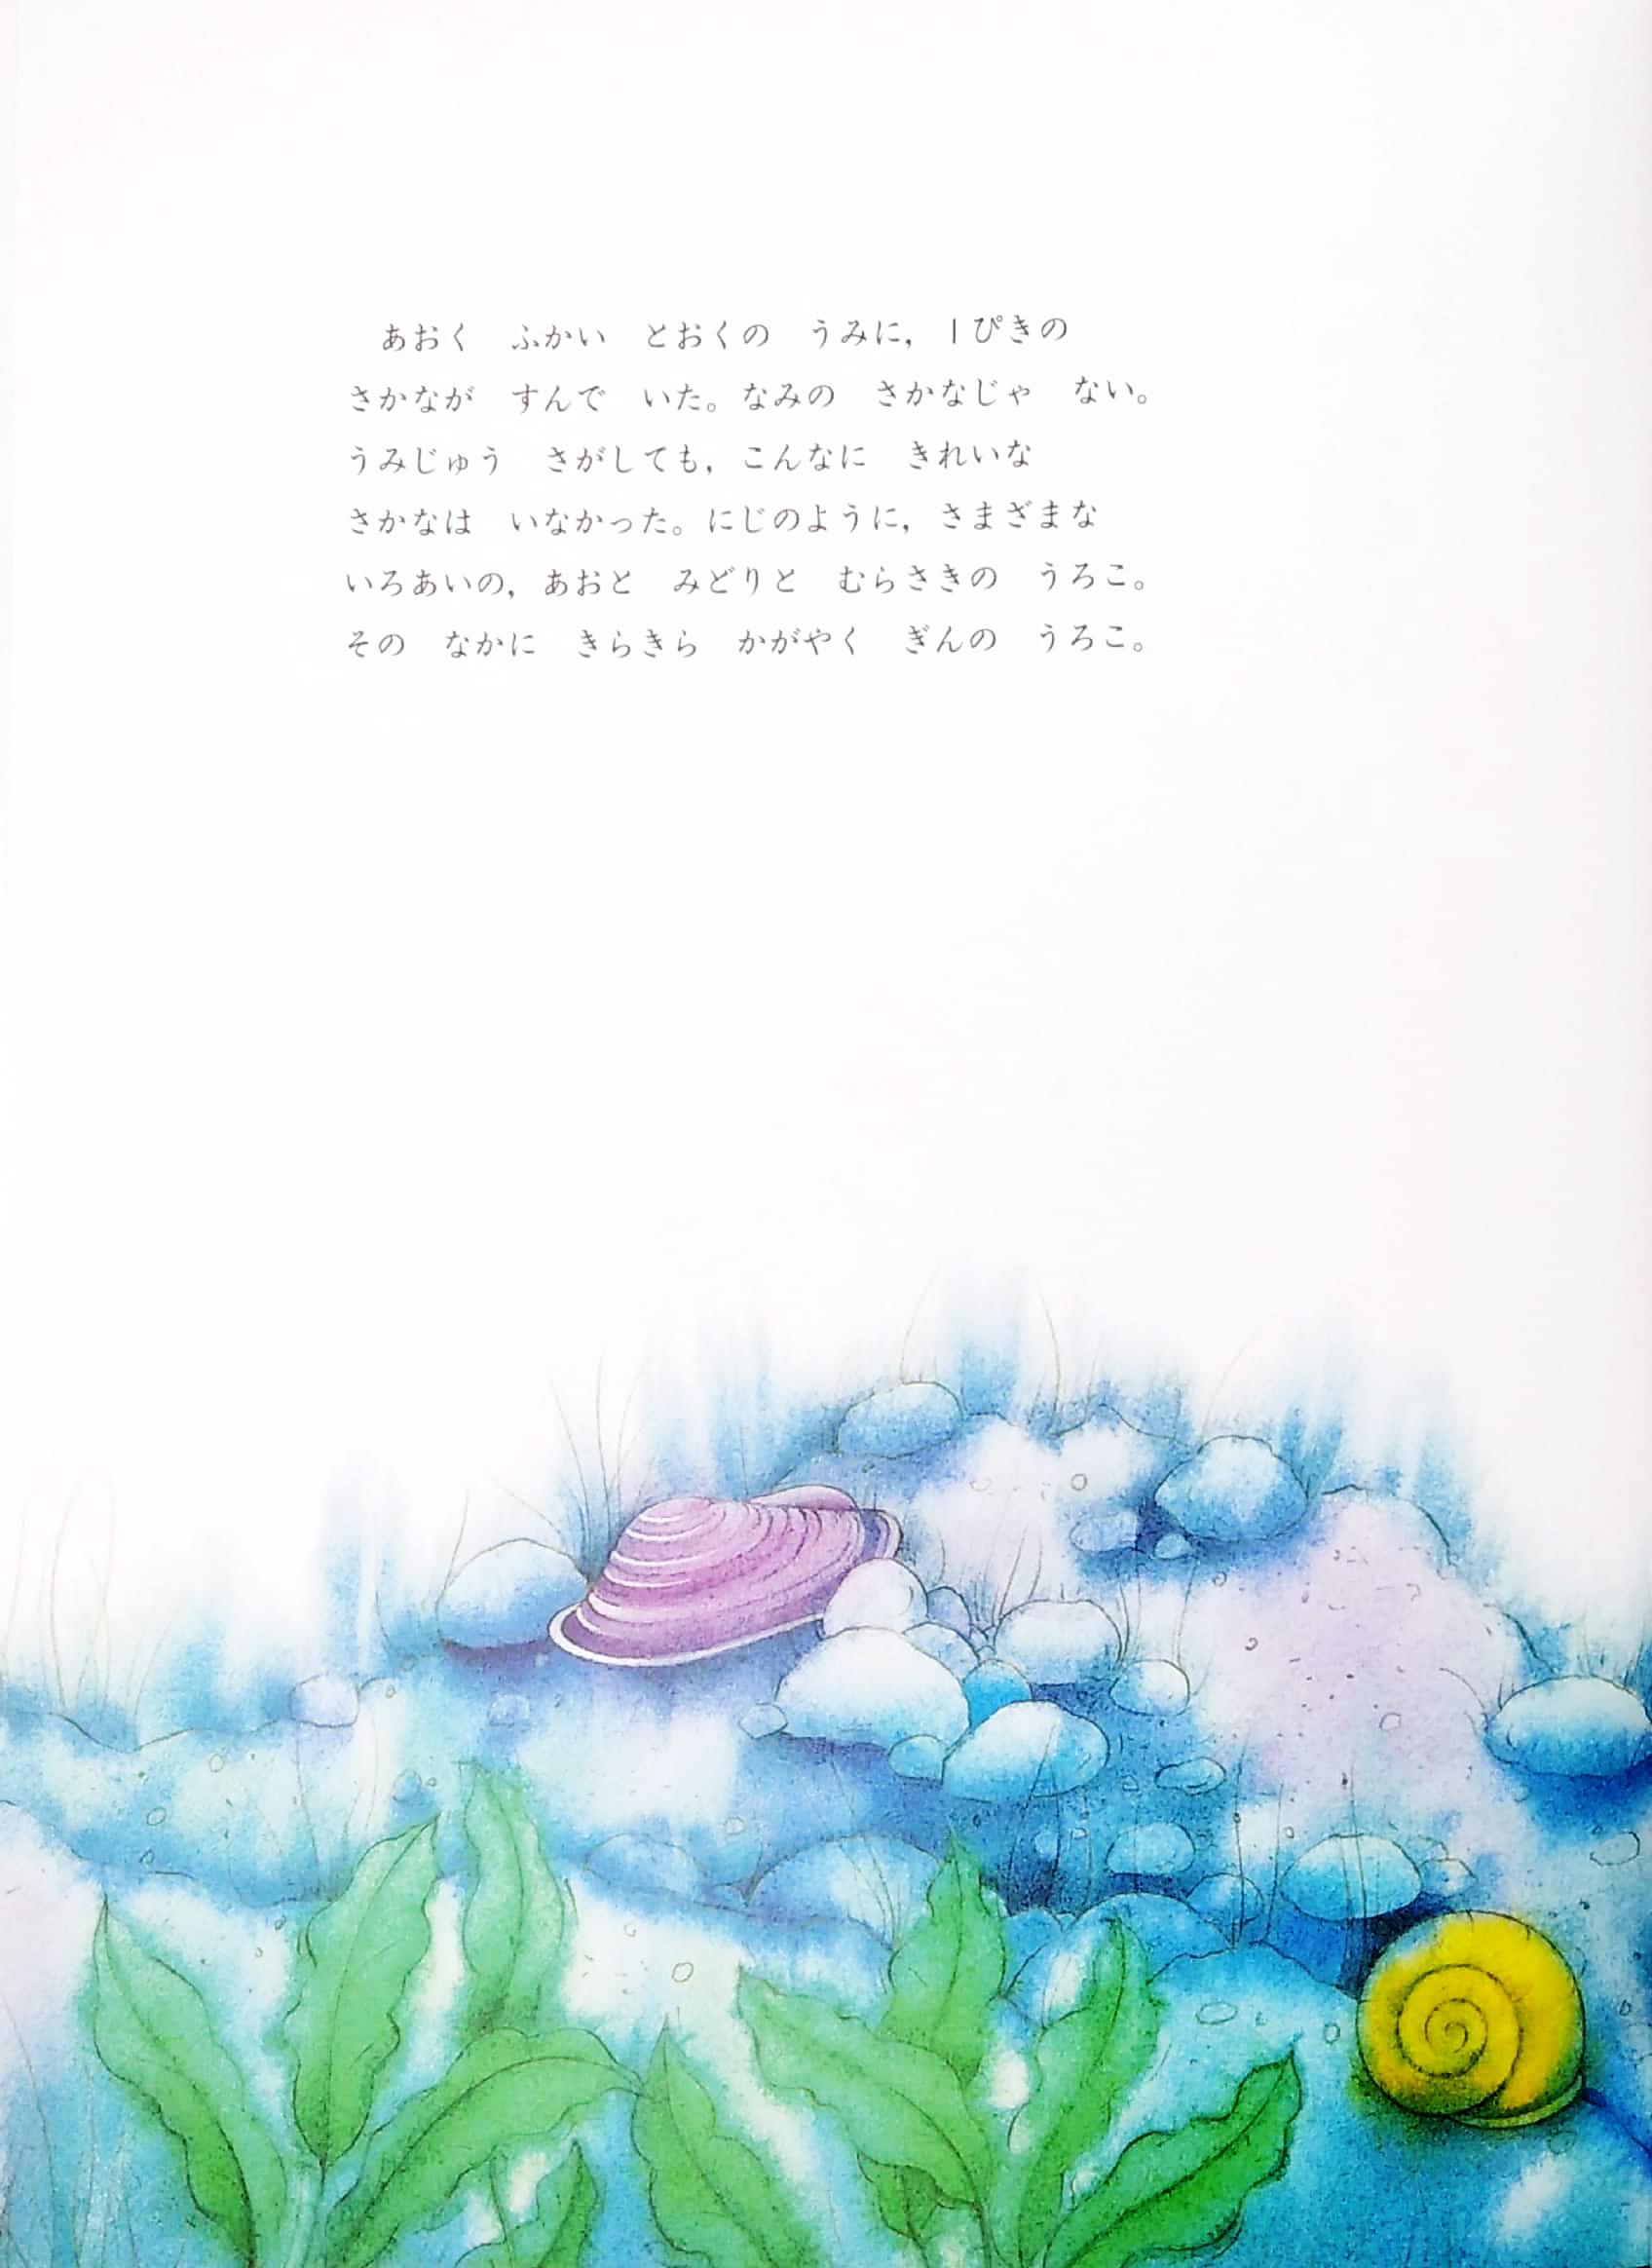 にじいろのさかな - Ni Ji Ro No Sakana - The Rainbow Fish